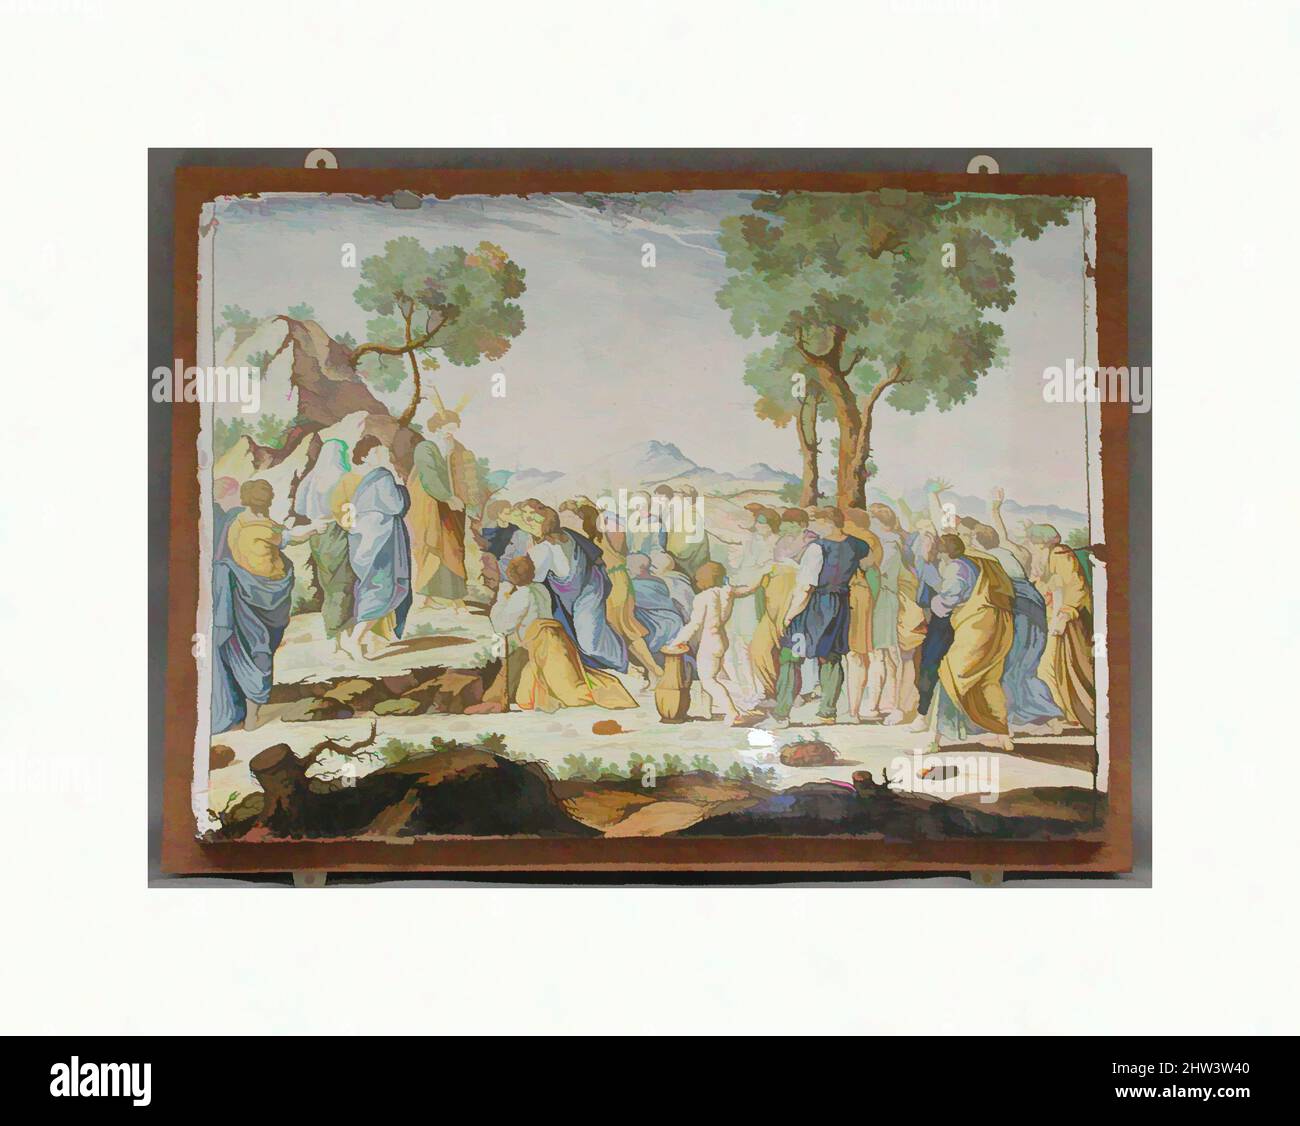 Kunst inspiriert von Moses und den Gesetzestafeln, Bartolomeo Terchi (1691–nach 1753) zugeschrieben, ca. 1720, Italienisch, San Quirico, Maiolica (verzinntes Steingut), insgesamt (bestätigt): 1 × 24 1/2 × 17 1/2 Zoll (2,5 × 62,2 × 44,5 cm), Keramik-Keramik, Bartolomeo Terchi zugeschrieben, Klassische Werke, die von Artotop mit einem Schuss Moderne modernisiert wurden. Formen, Farbe und Wert, auffällige visuelle Wirkung auf Kunst. Emotionen durch Freiheit von Kunstwerken auf zeitgemäße Weise. Eine zeitlose Botschaft, die eine wild kreative neue Richtung verfolgt. Künstler, die sich dem digitalen Medium zuwenden und die Artotop NFT erschaffen Stockfoto